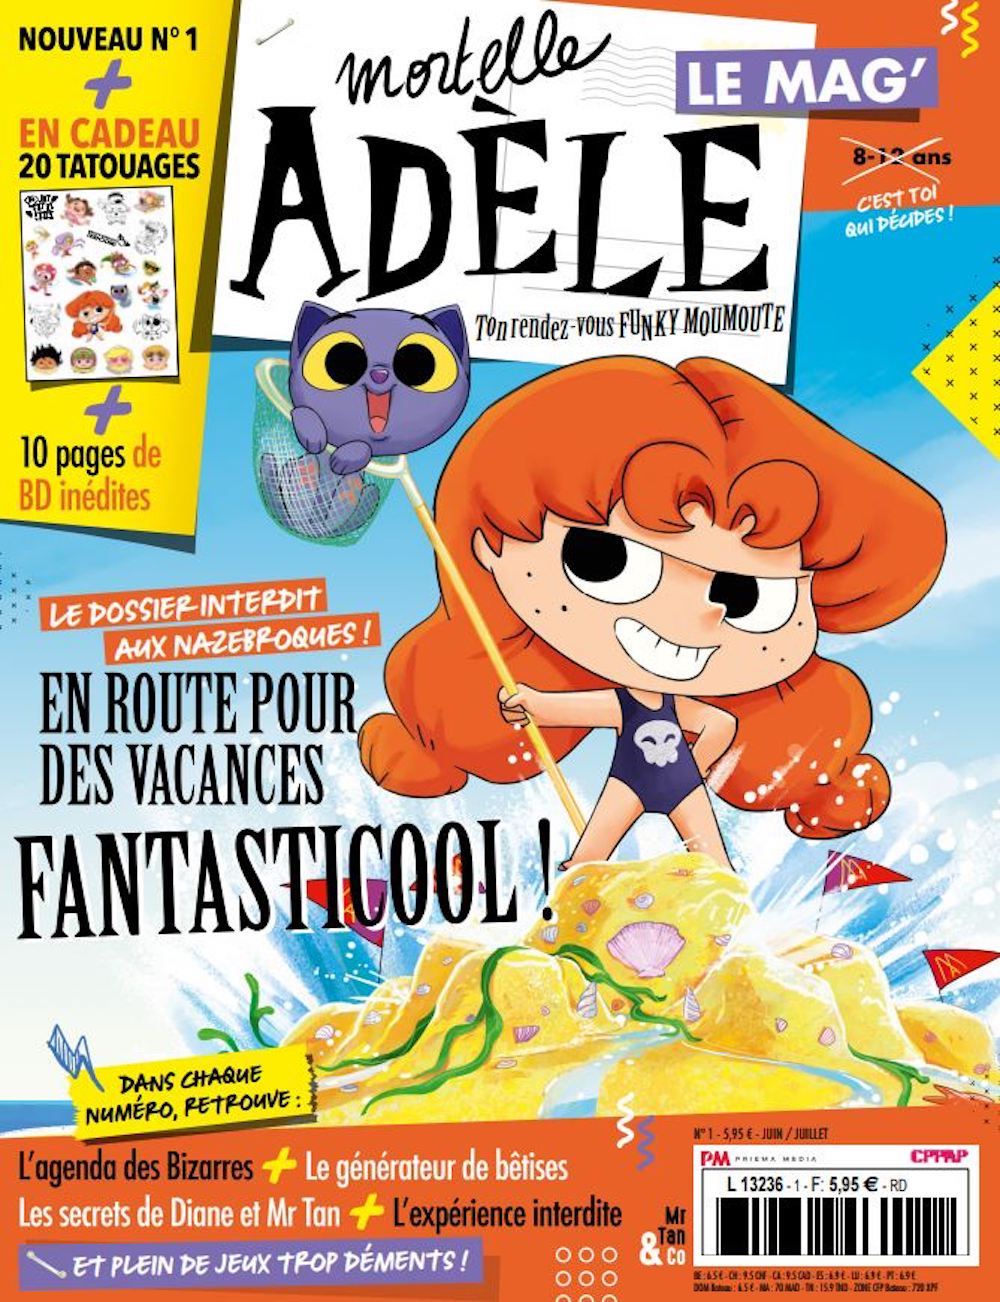 Serie Mortelle Adèle [BD PHIL Paris, une librairie du réseau Canal BD]